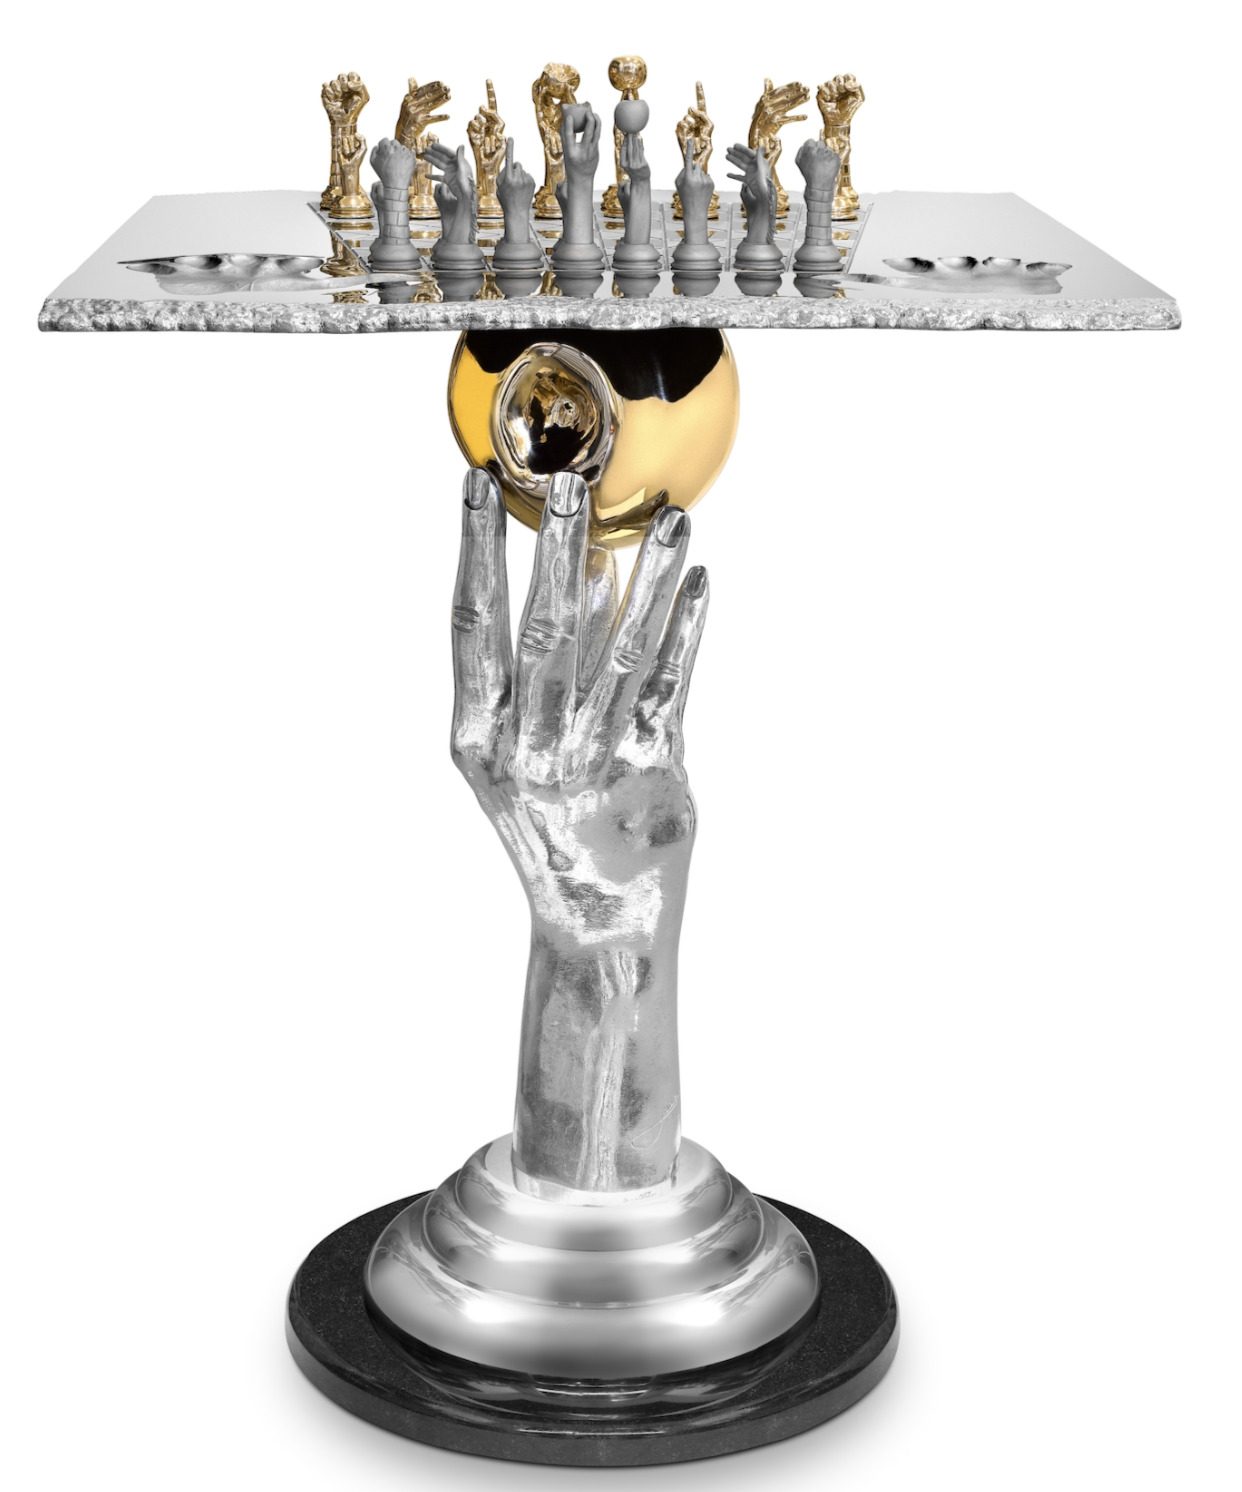 Queen, Sculpture Table, MTArt Chess, Set, Agency Quinn, - Lorenzo 2022 -